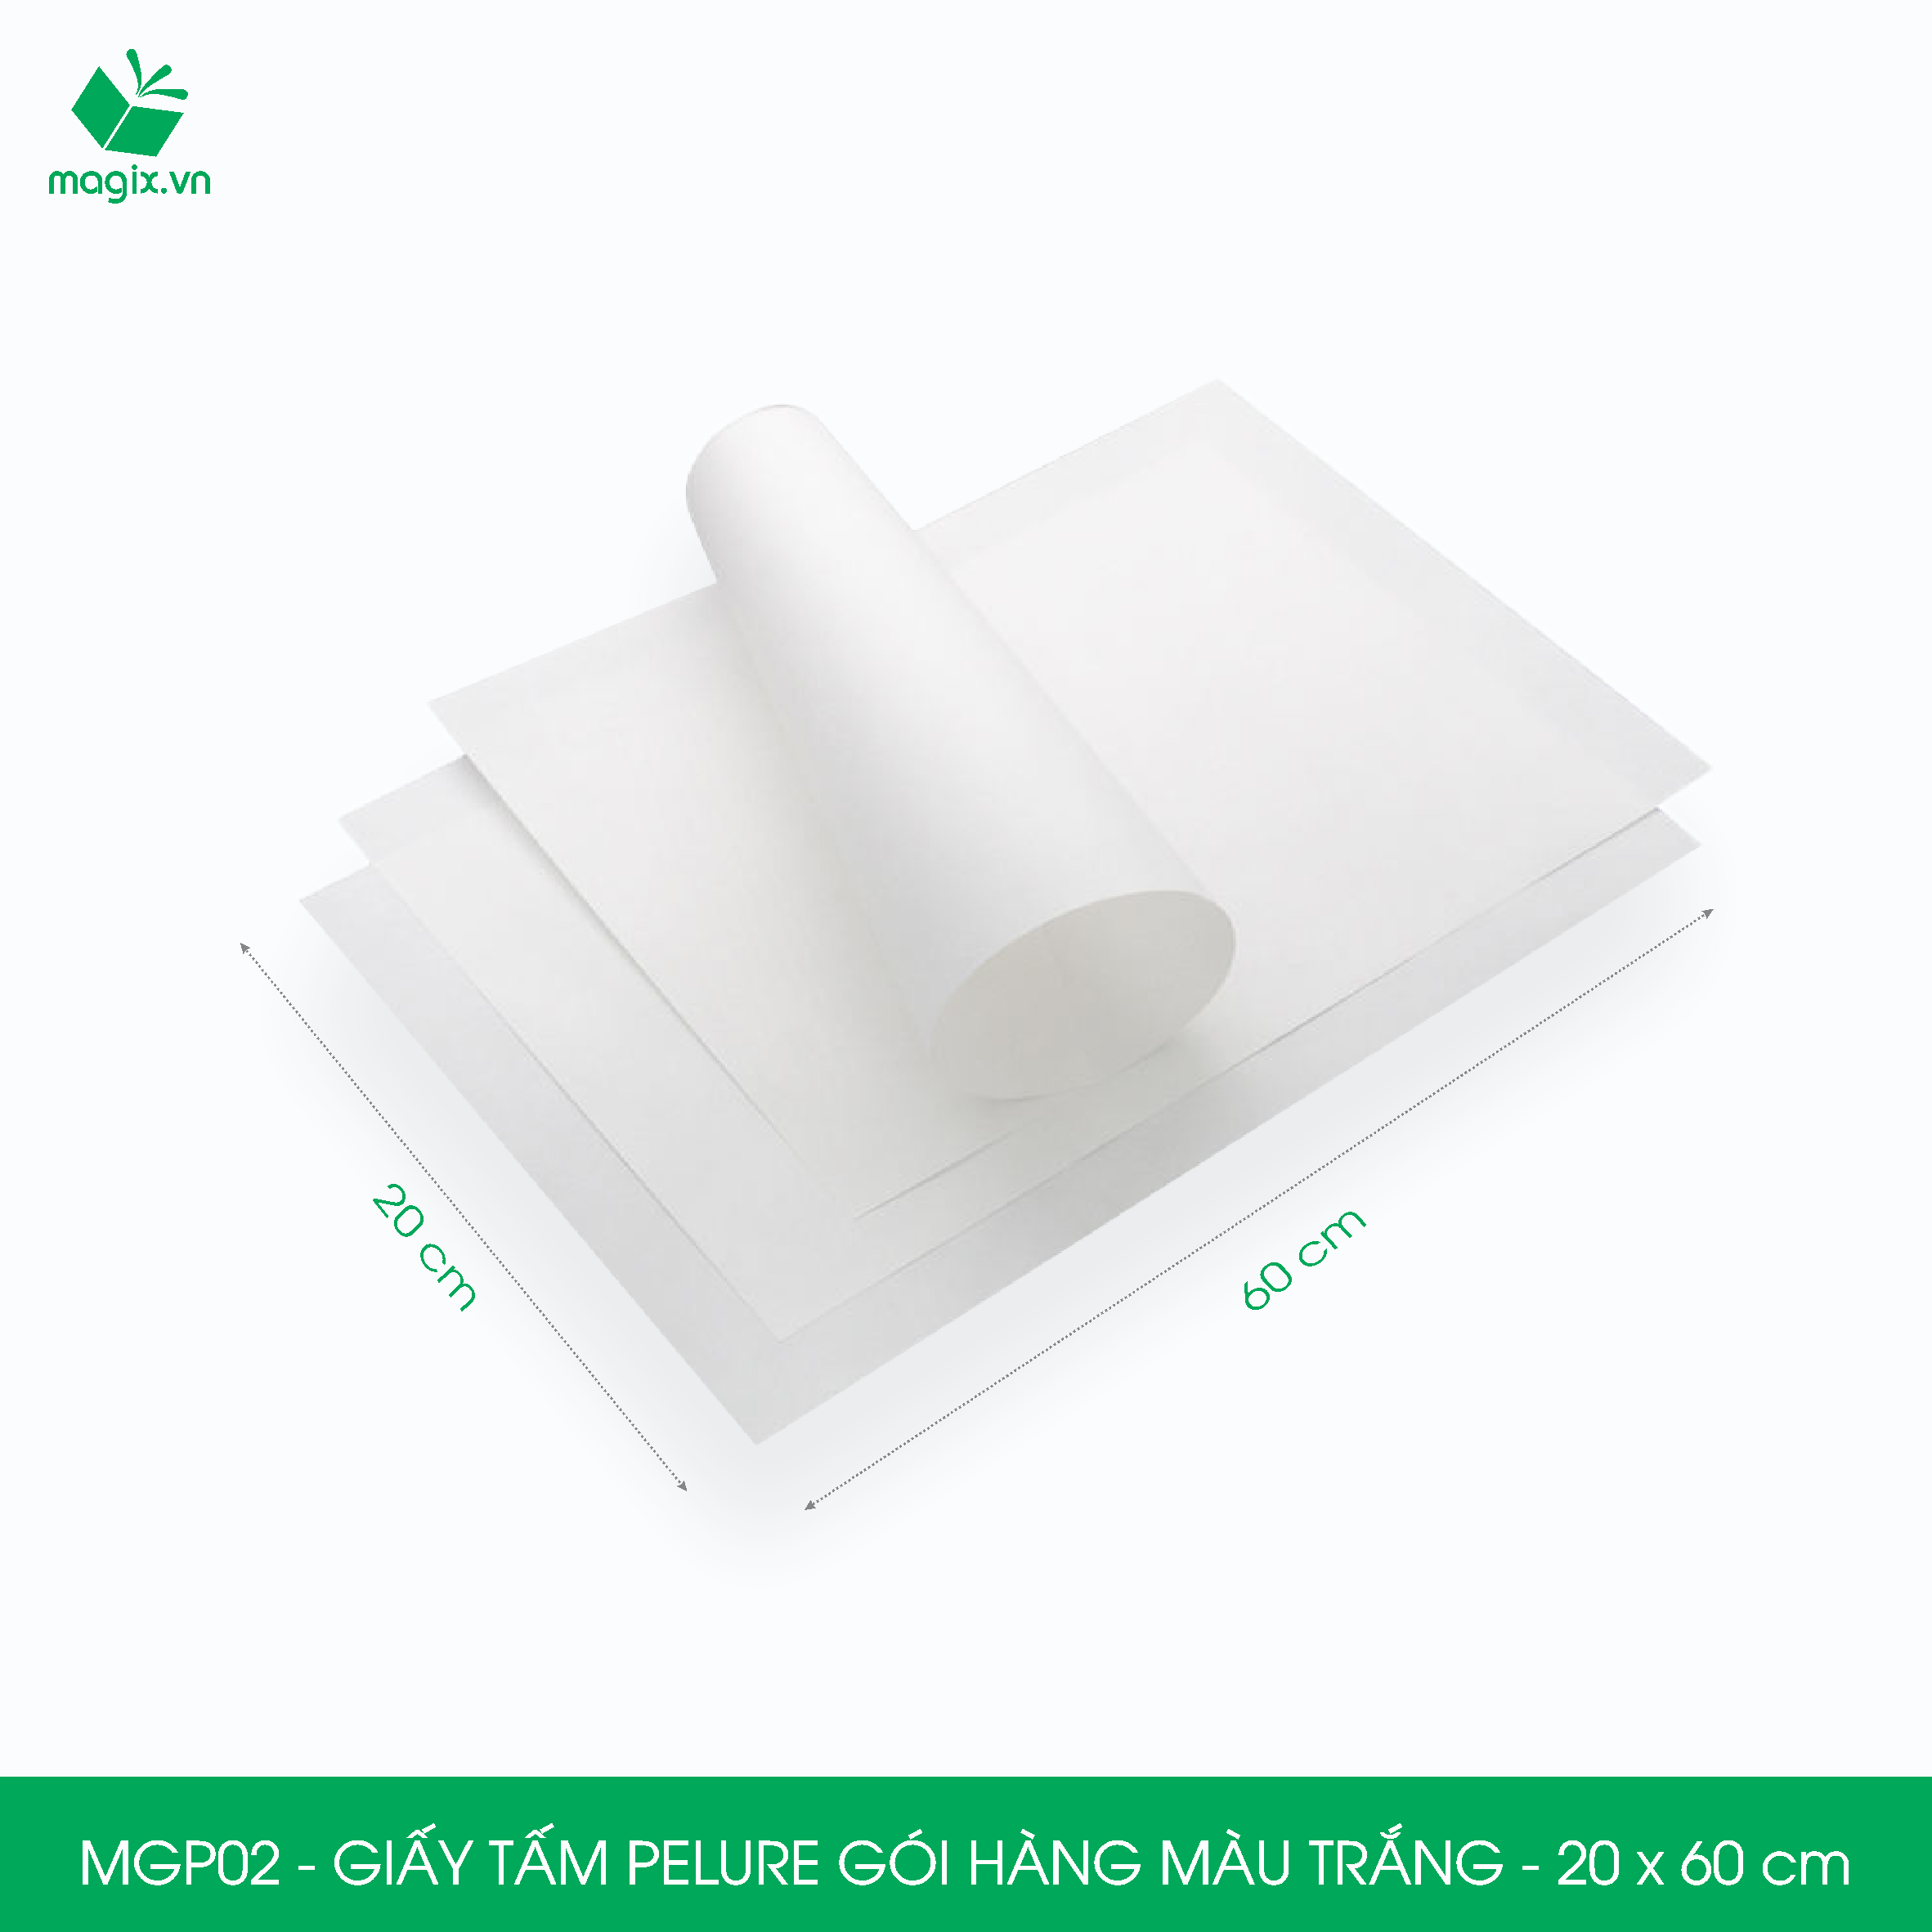 MGP02 - 20x60 cm - 100 tấm giấy Pelure trắng gói hàng, giấy chống ẩm 2 mặt mịn, giấy bọc hàng thời trang